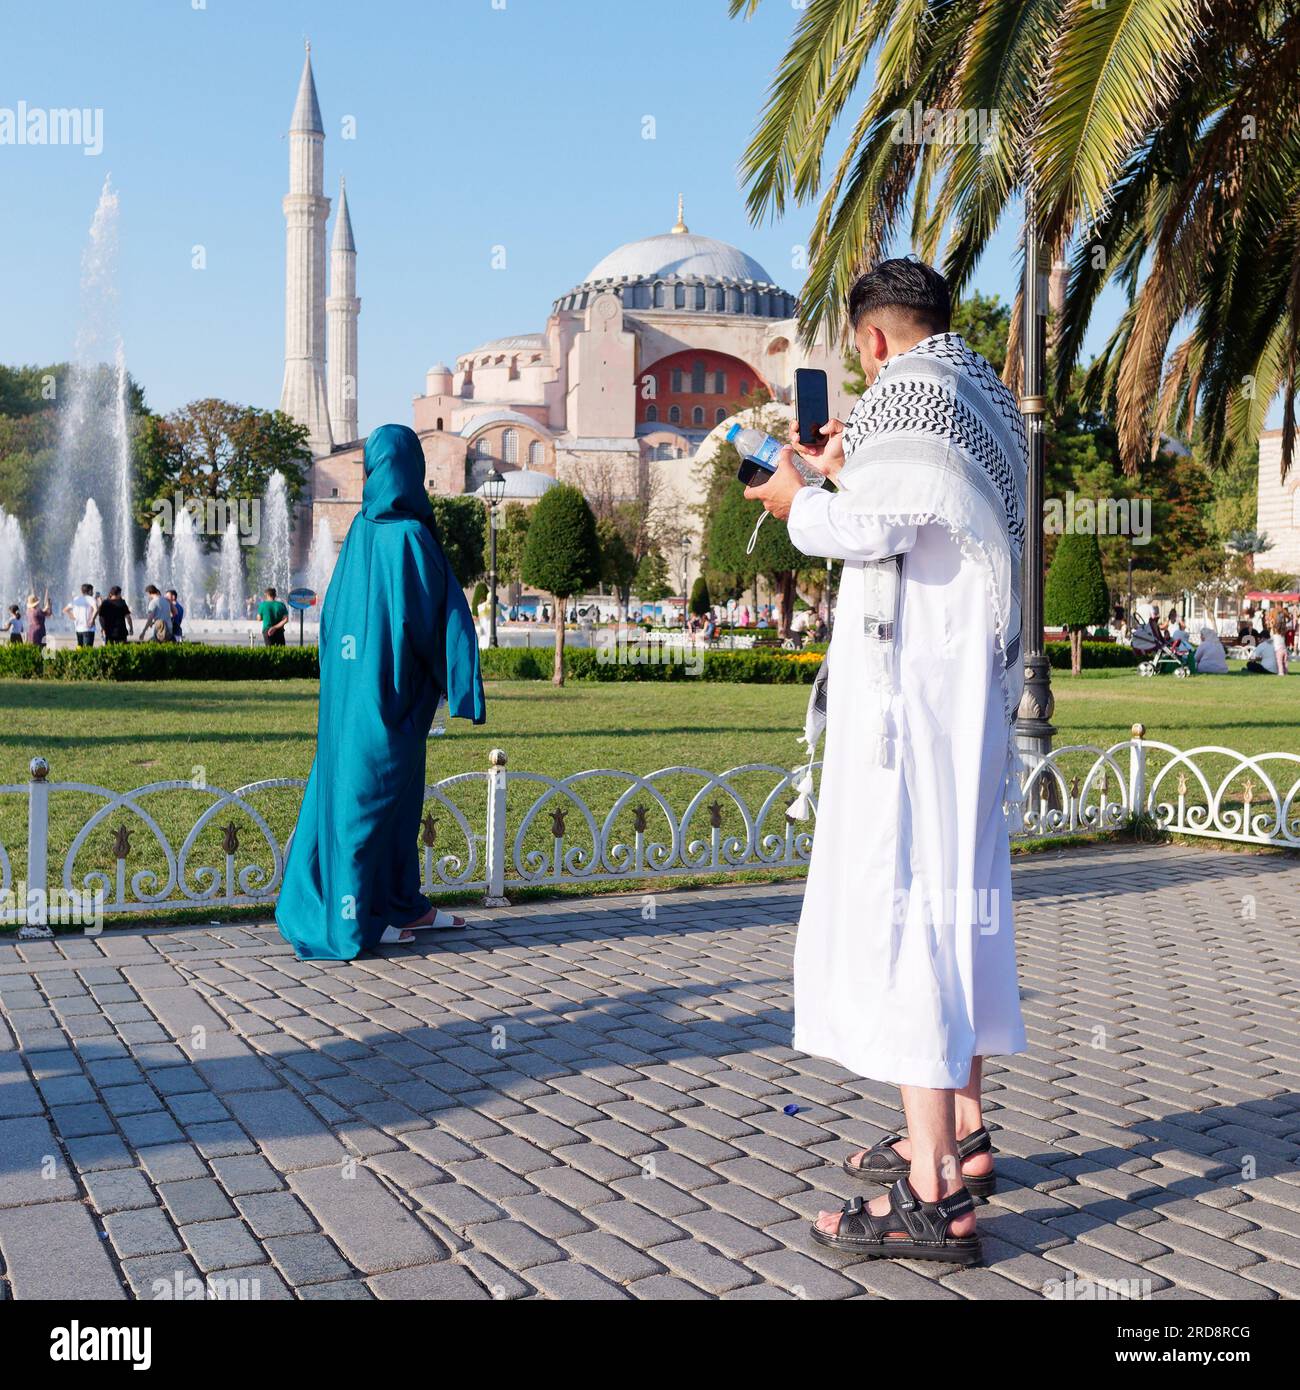 Un couple en robe traditionnelle profitant du parc Sultanahmet sur une soirée d'été avec la mosquée Sainte-Sophie derrière, Istanbul, Turquie Banque D'Images